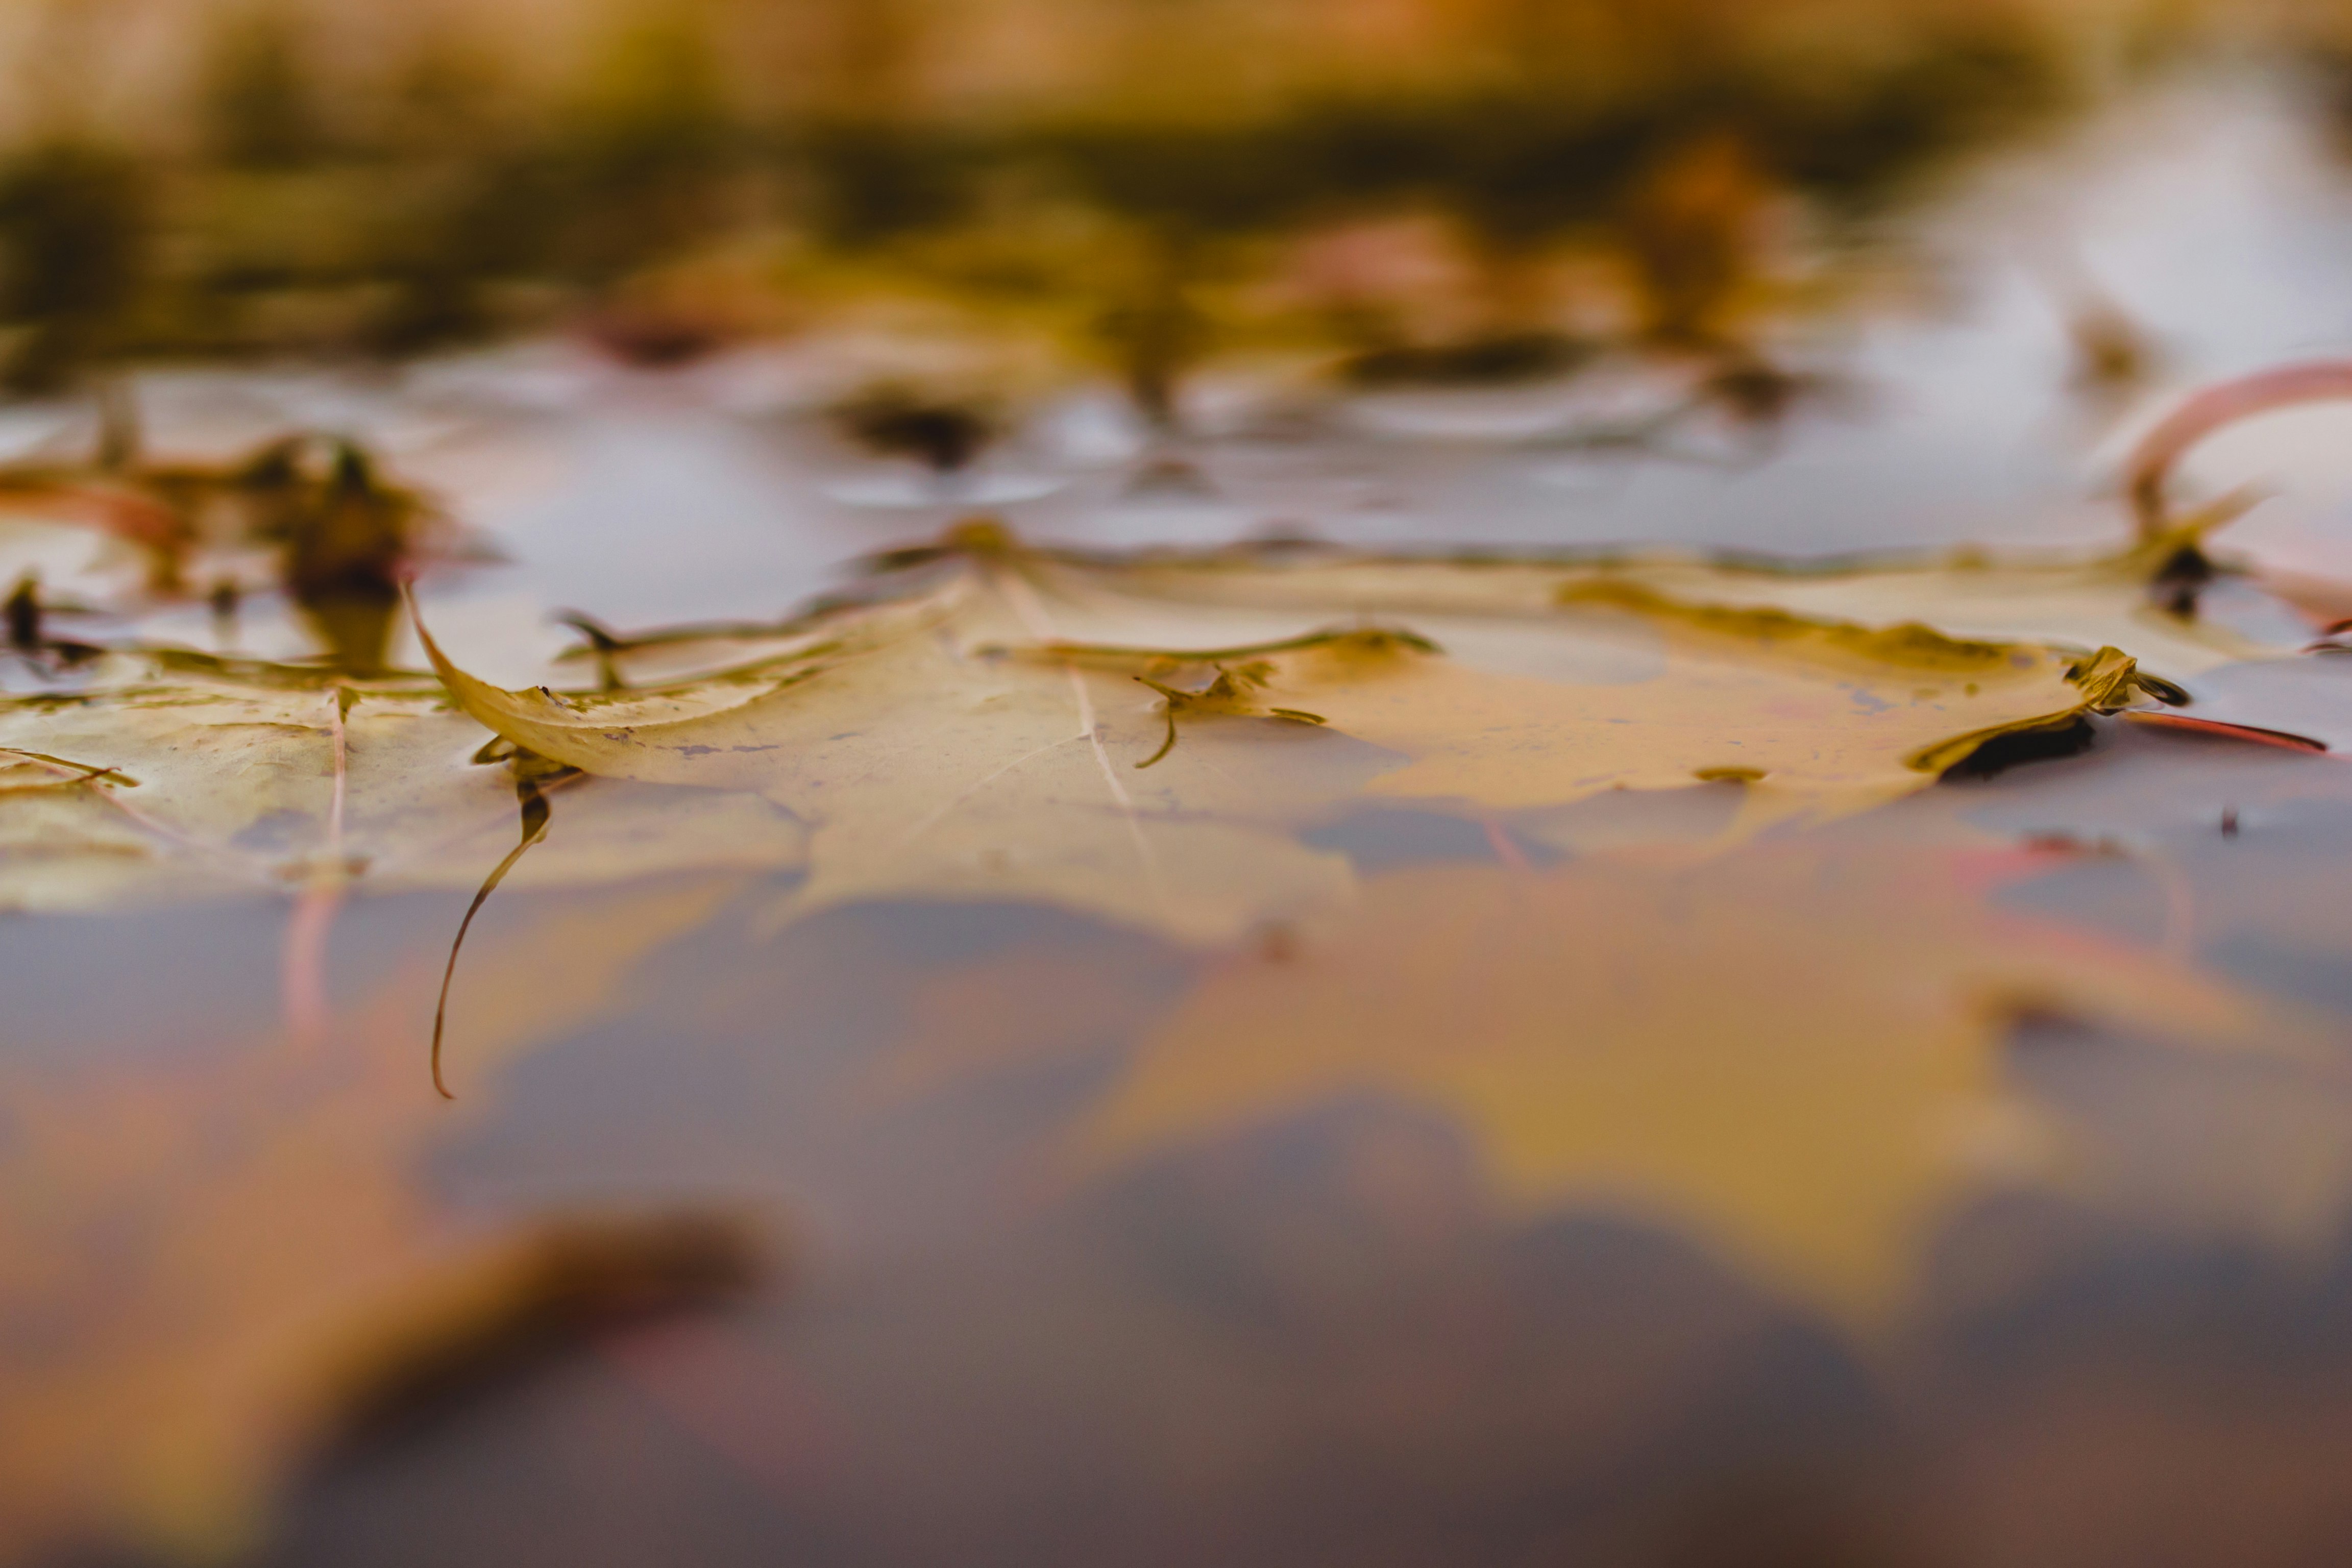 leaves in water